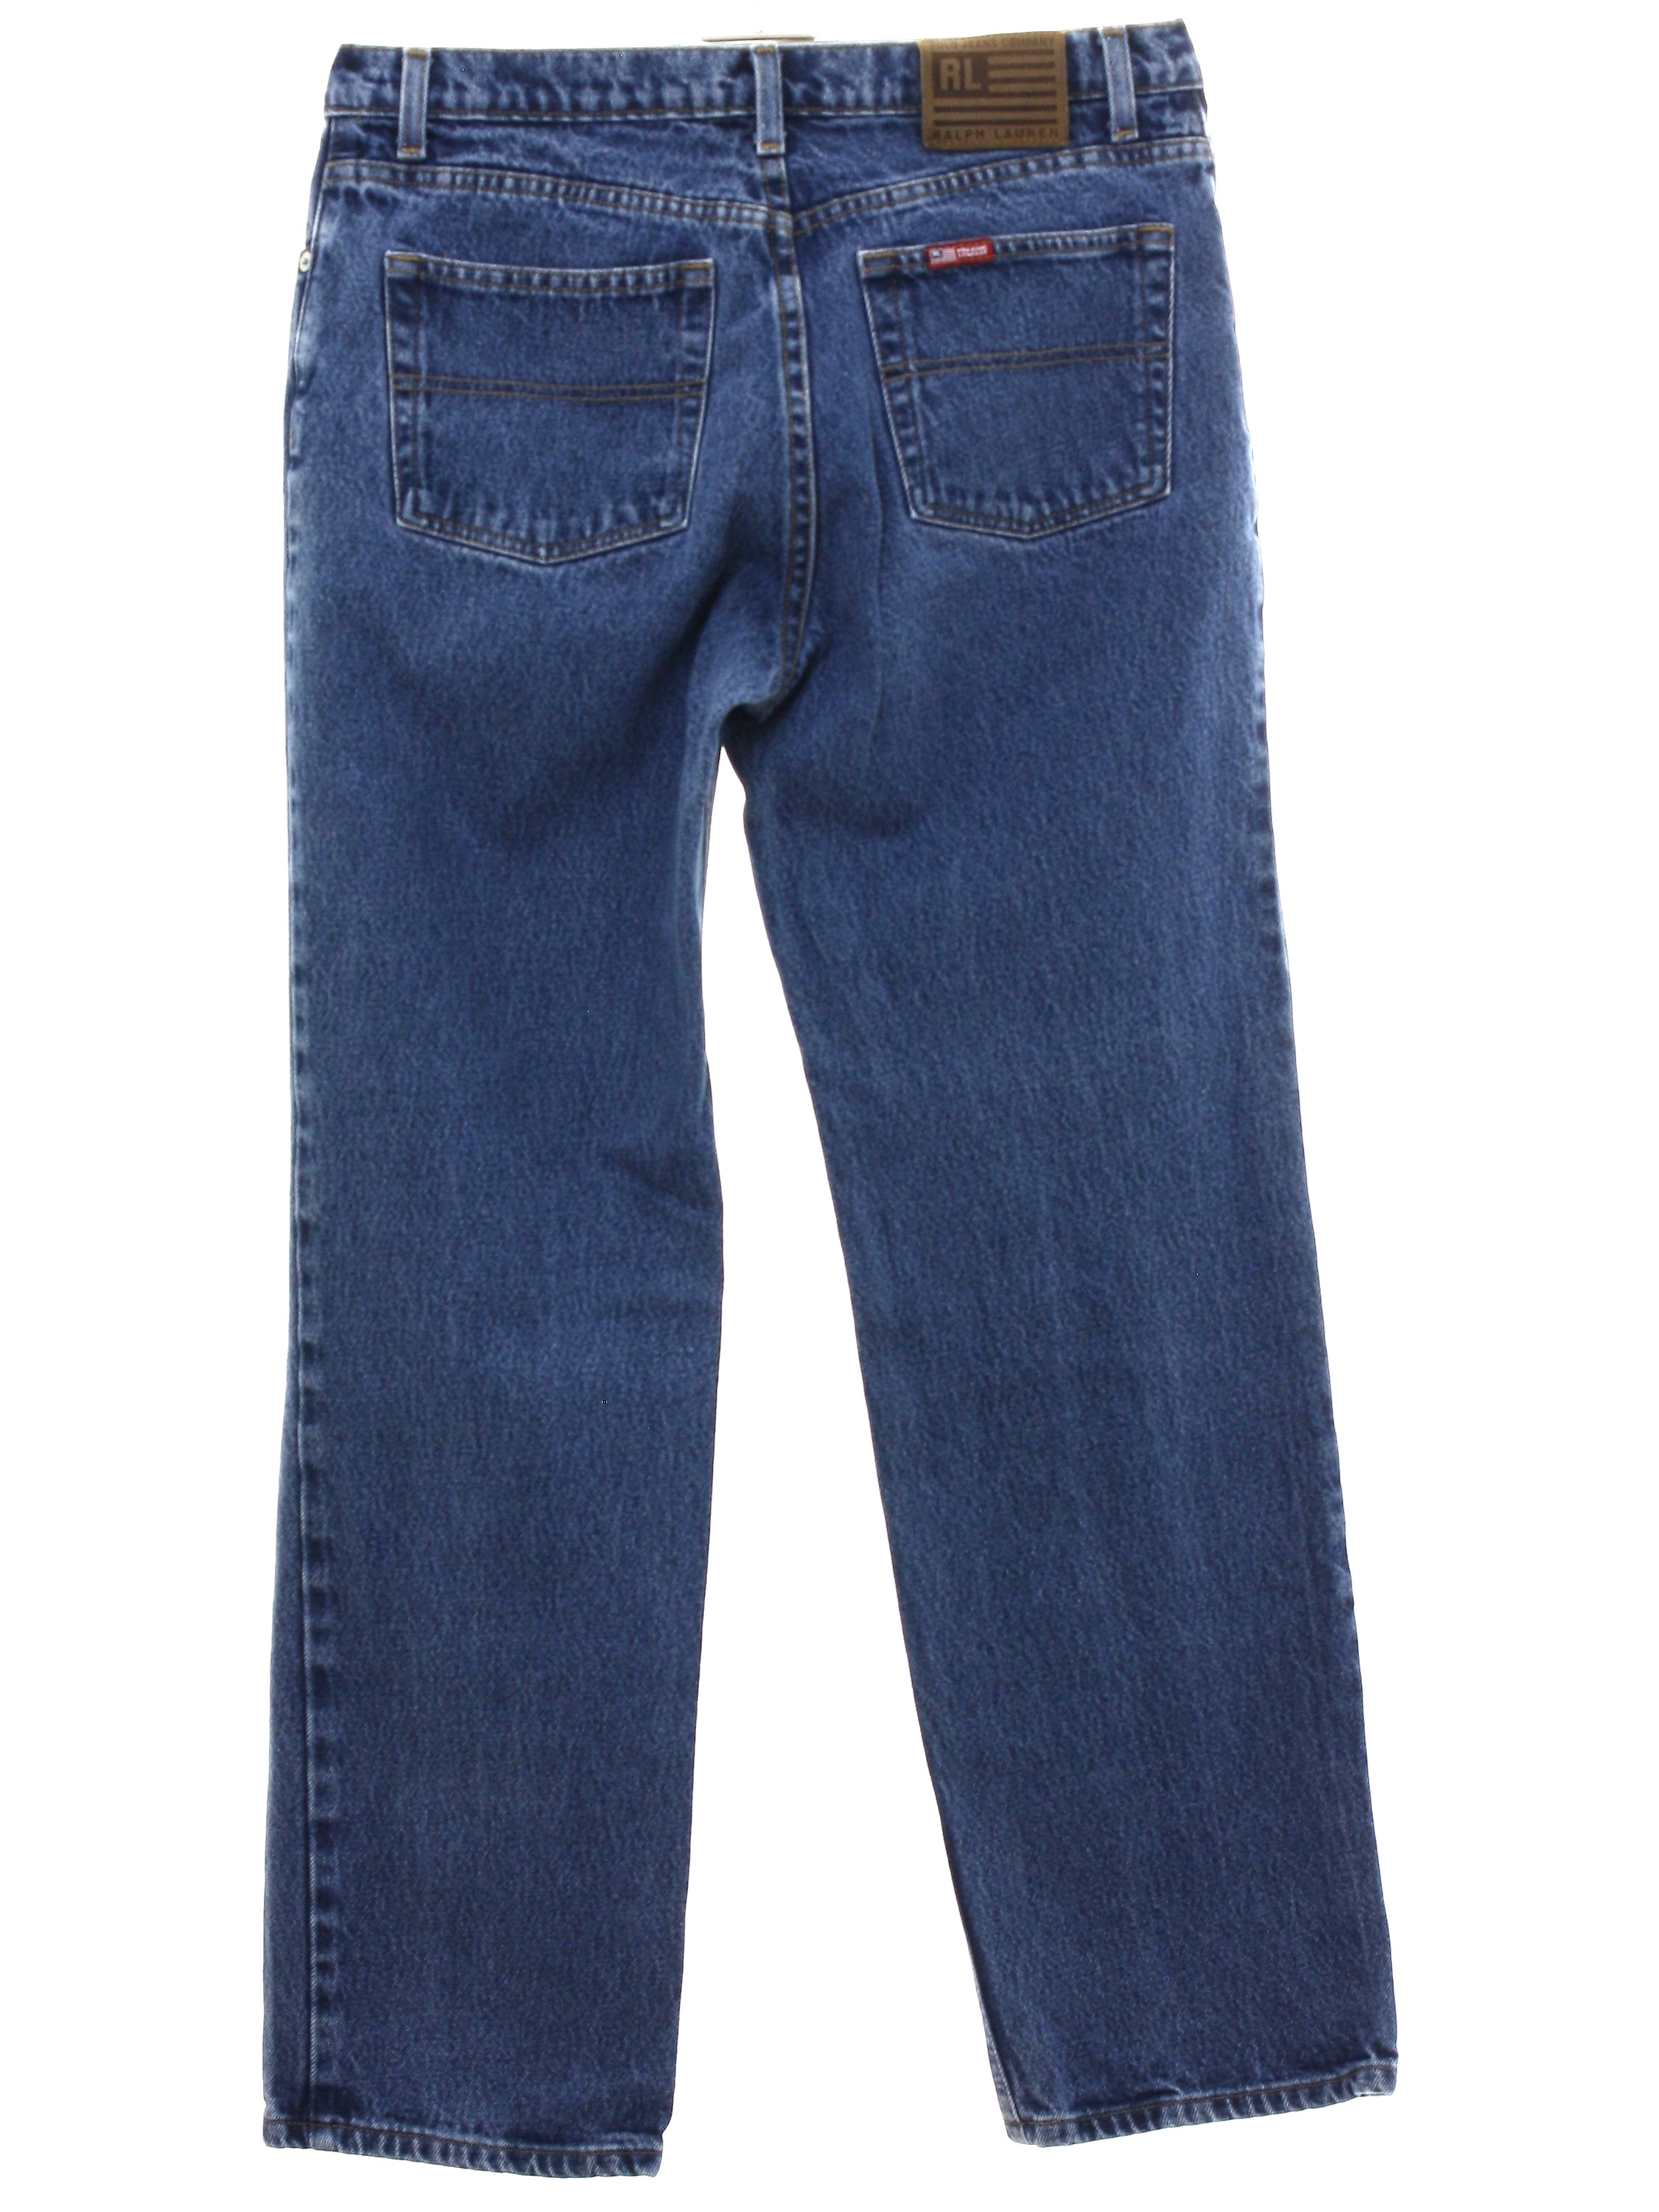 Vintage Polo Jeans Company Nineties Pants: 90s -Polo Jeans Company ...